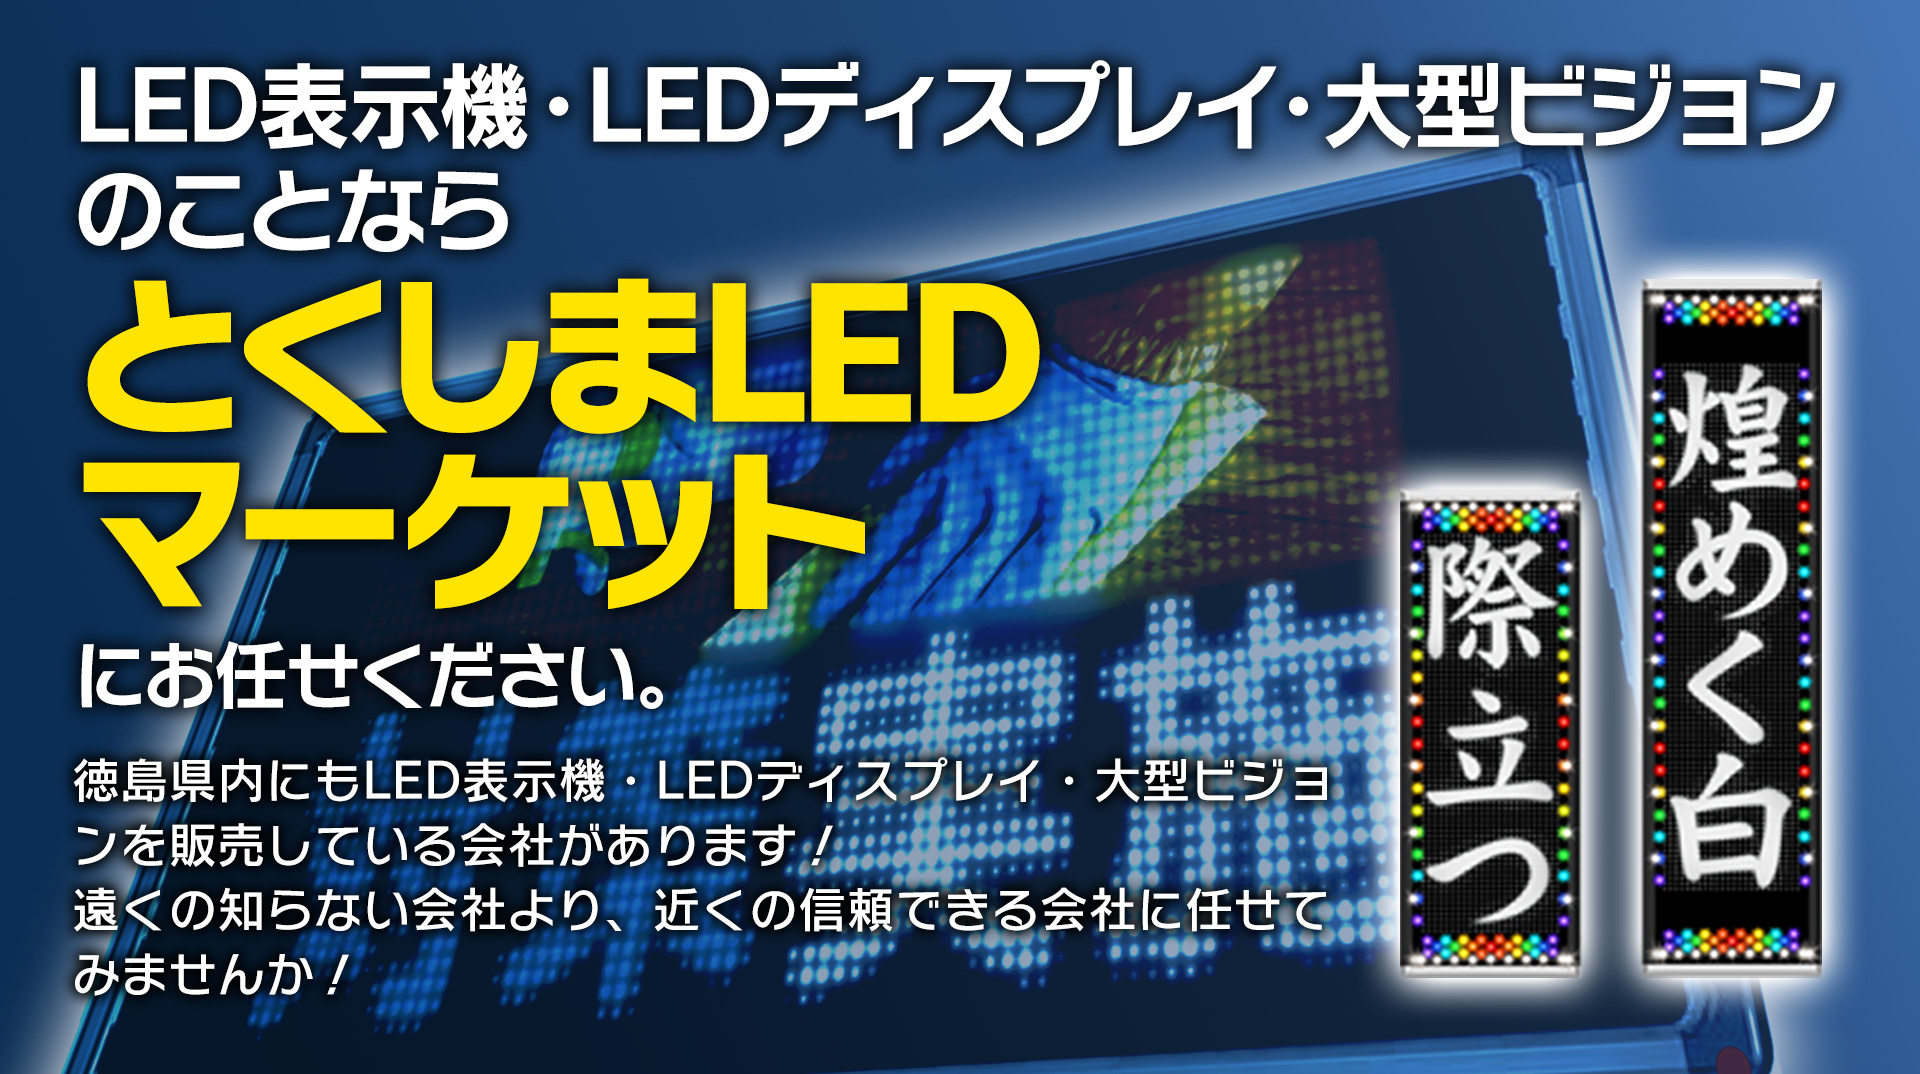 LED表示機・LEDディスプレイ・大型ビジョンのことなら　とくしまLEDマーケット　にお任せください。